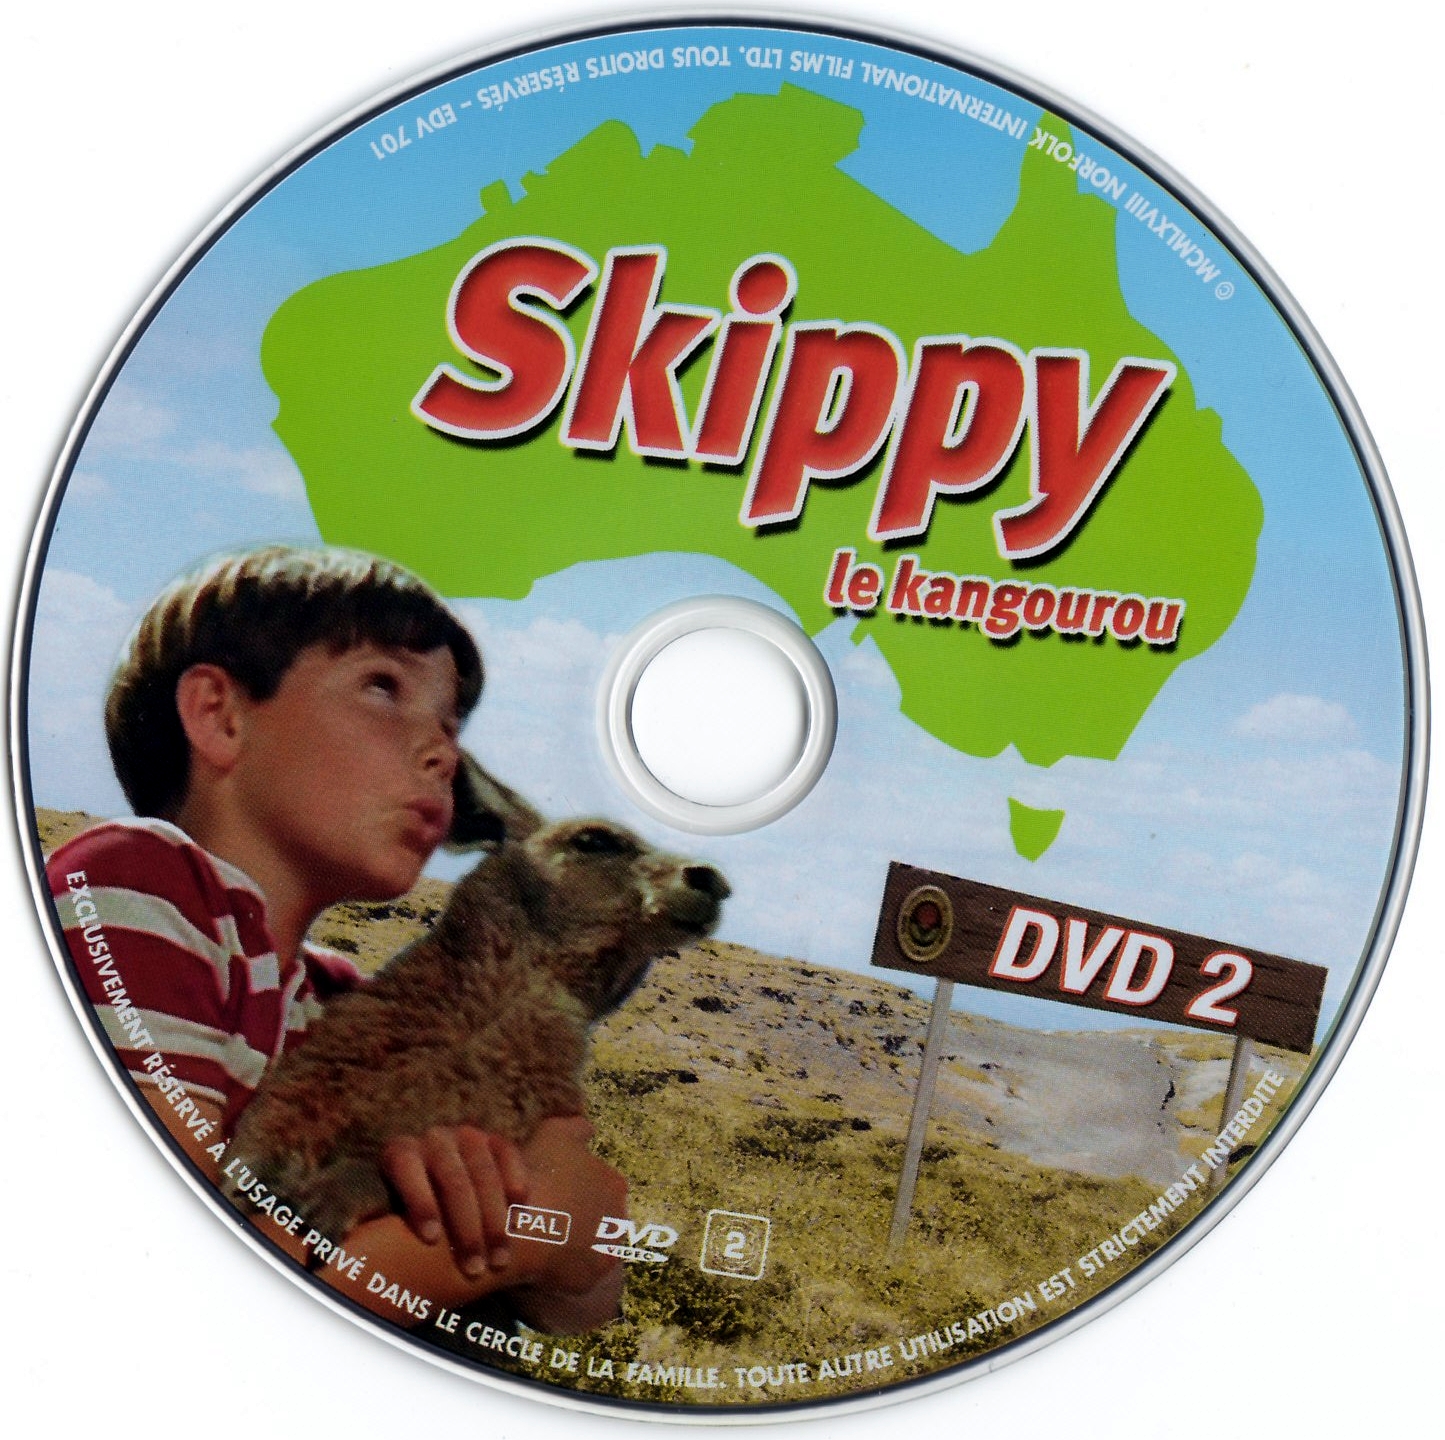 Skippy le kangourou DVD 2